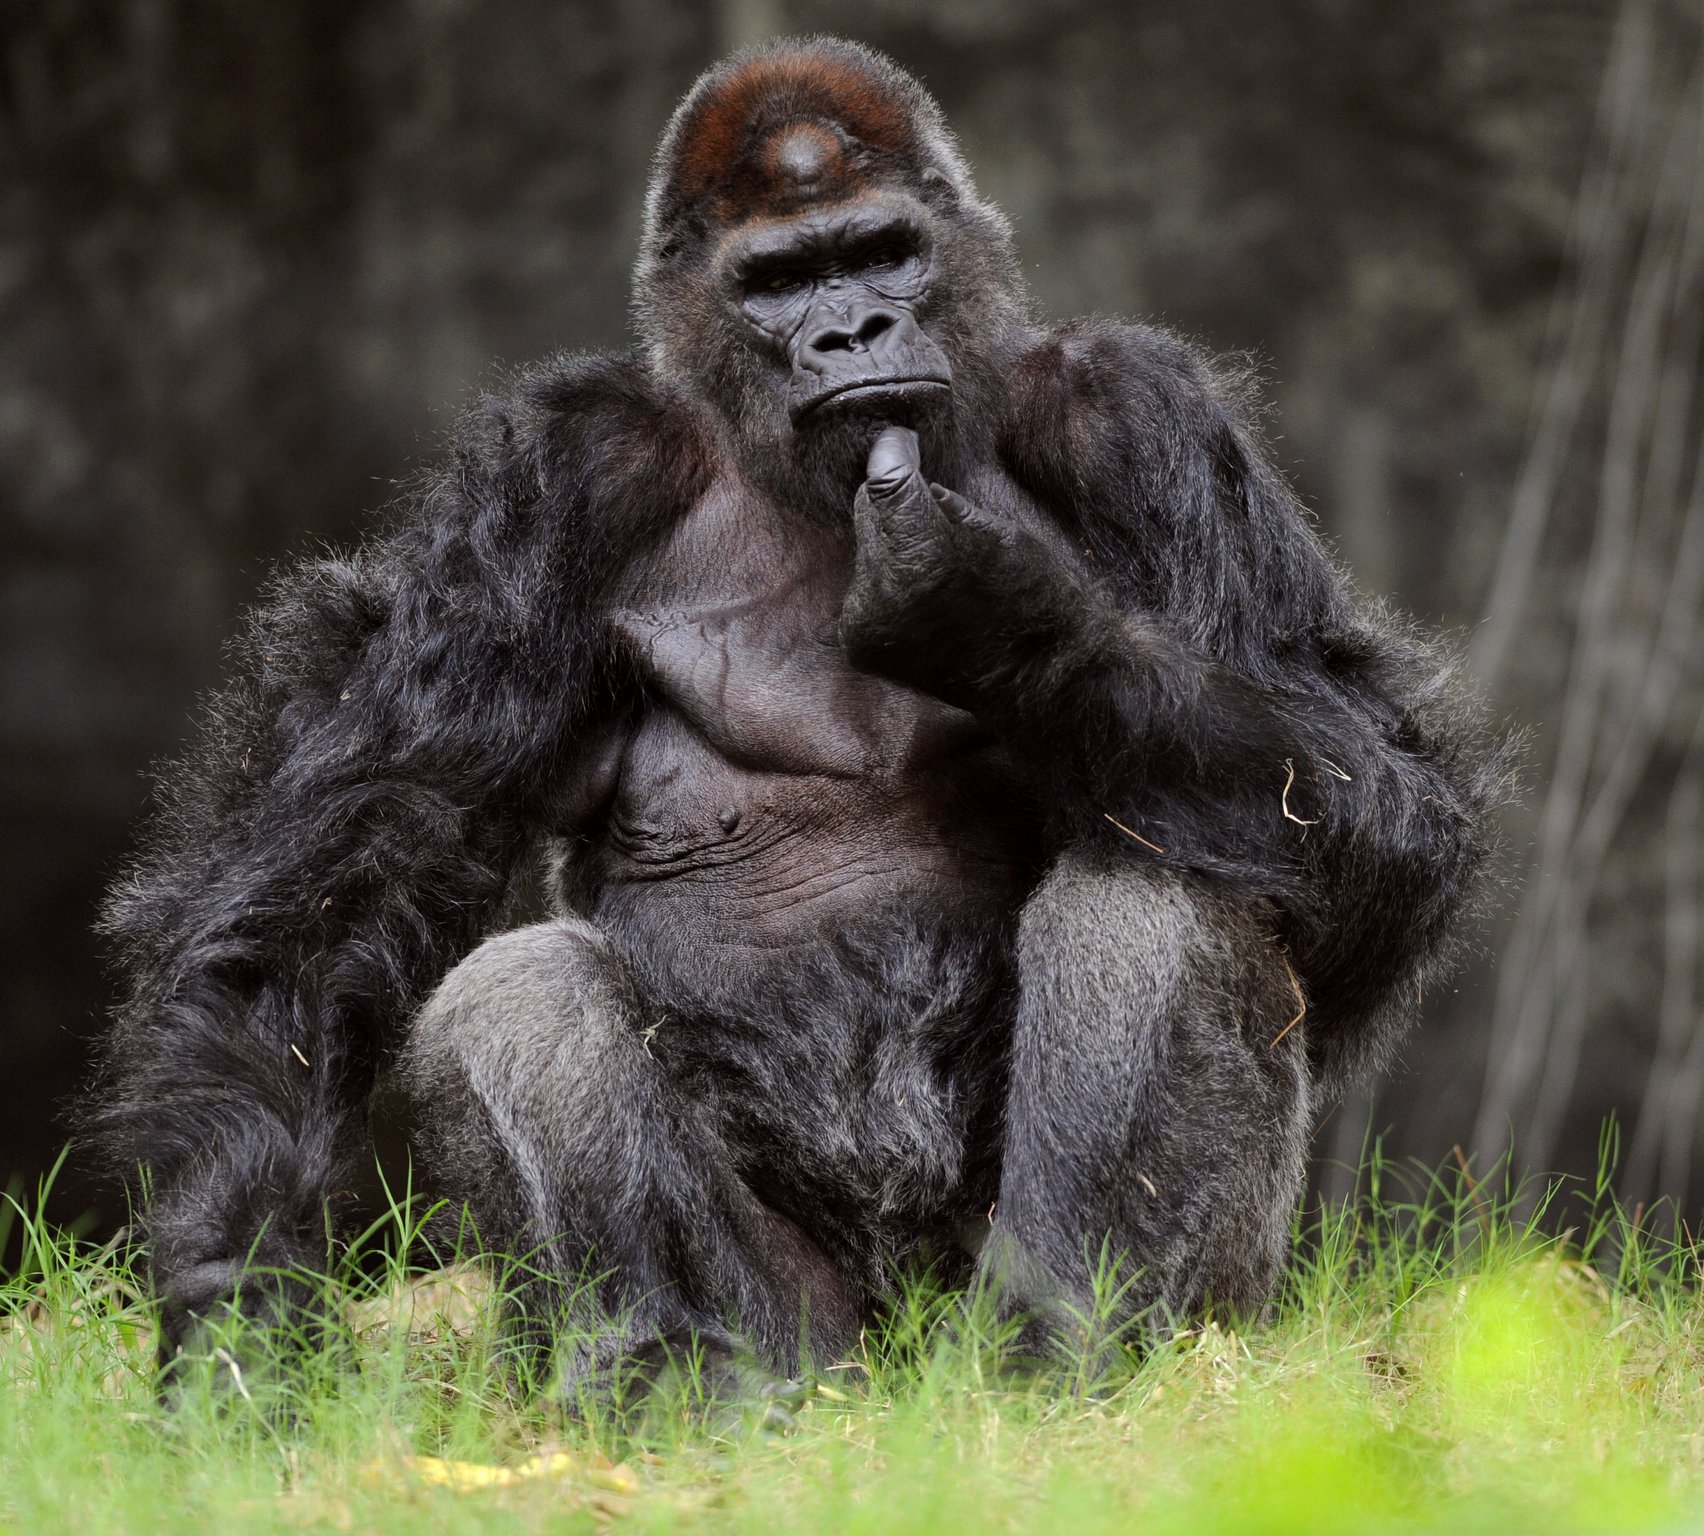 gorilla hand - Google Search | Gorillas! | Pinterest